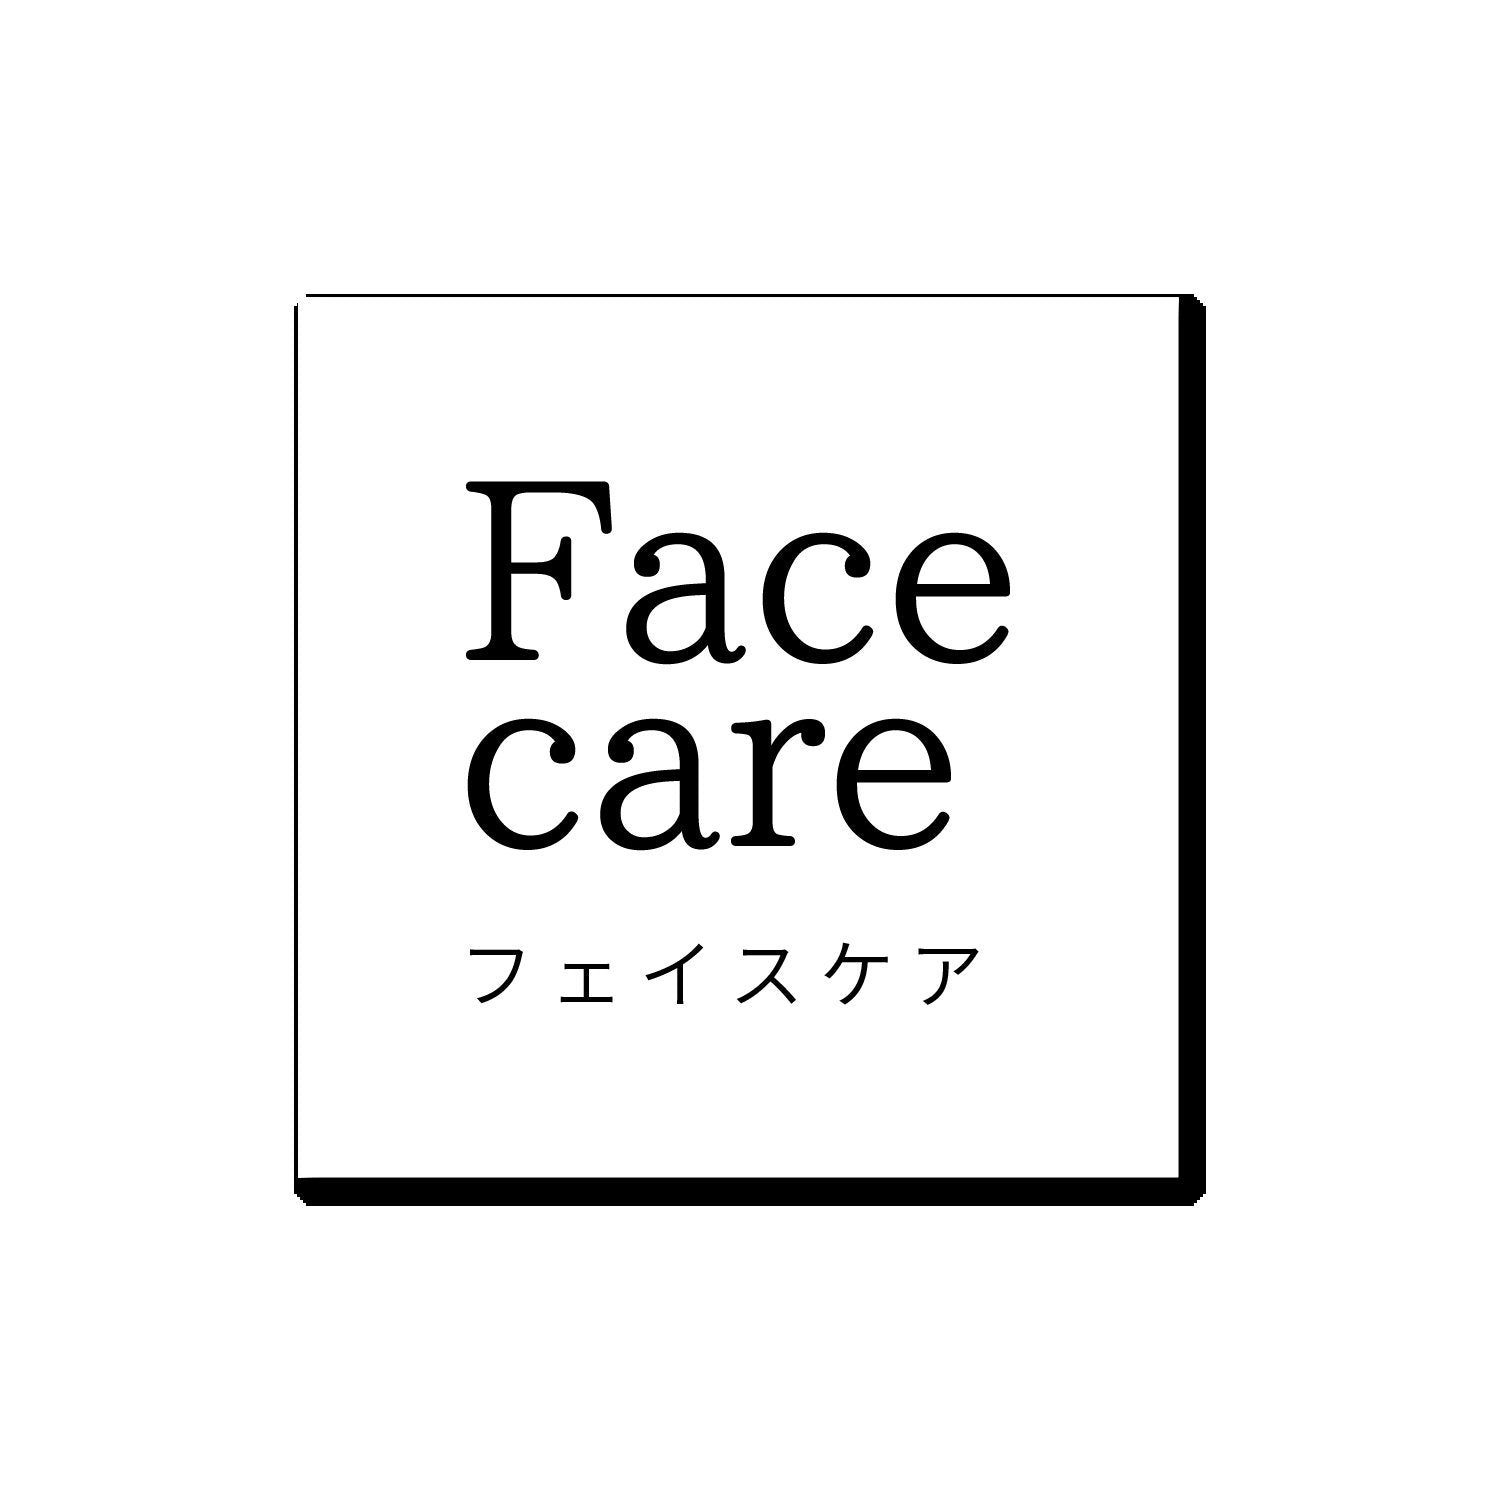 CBD Face care